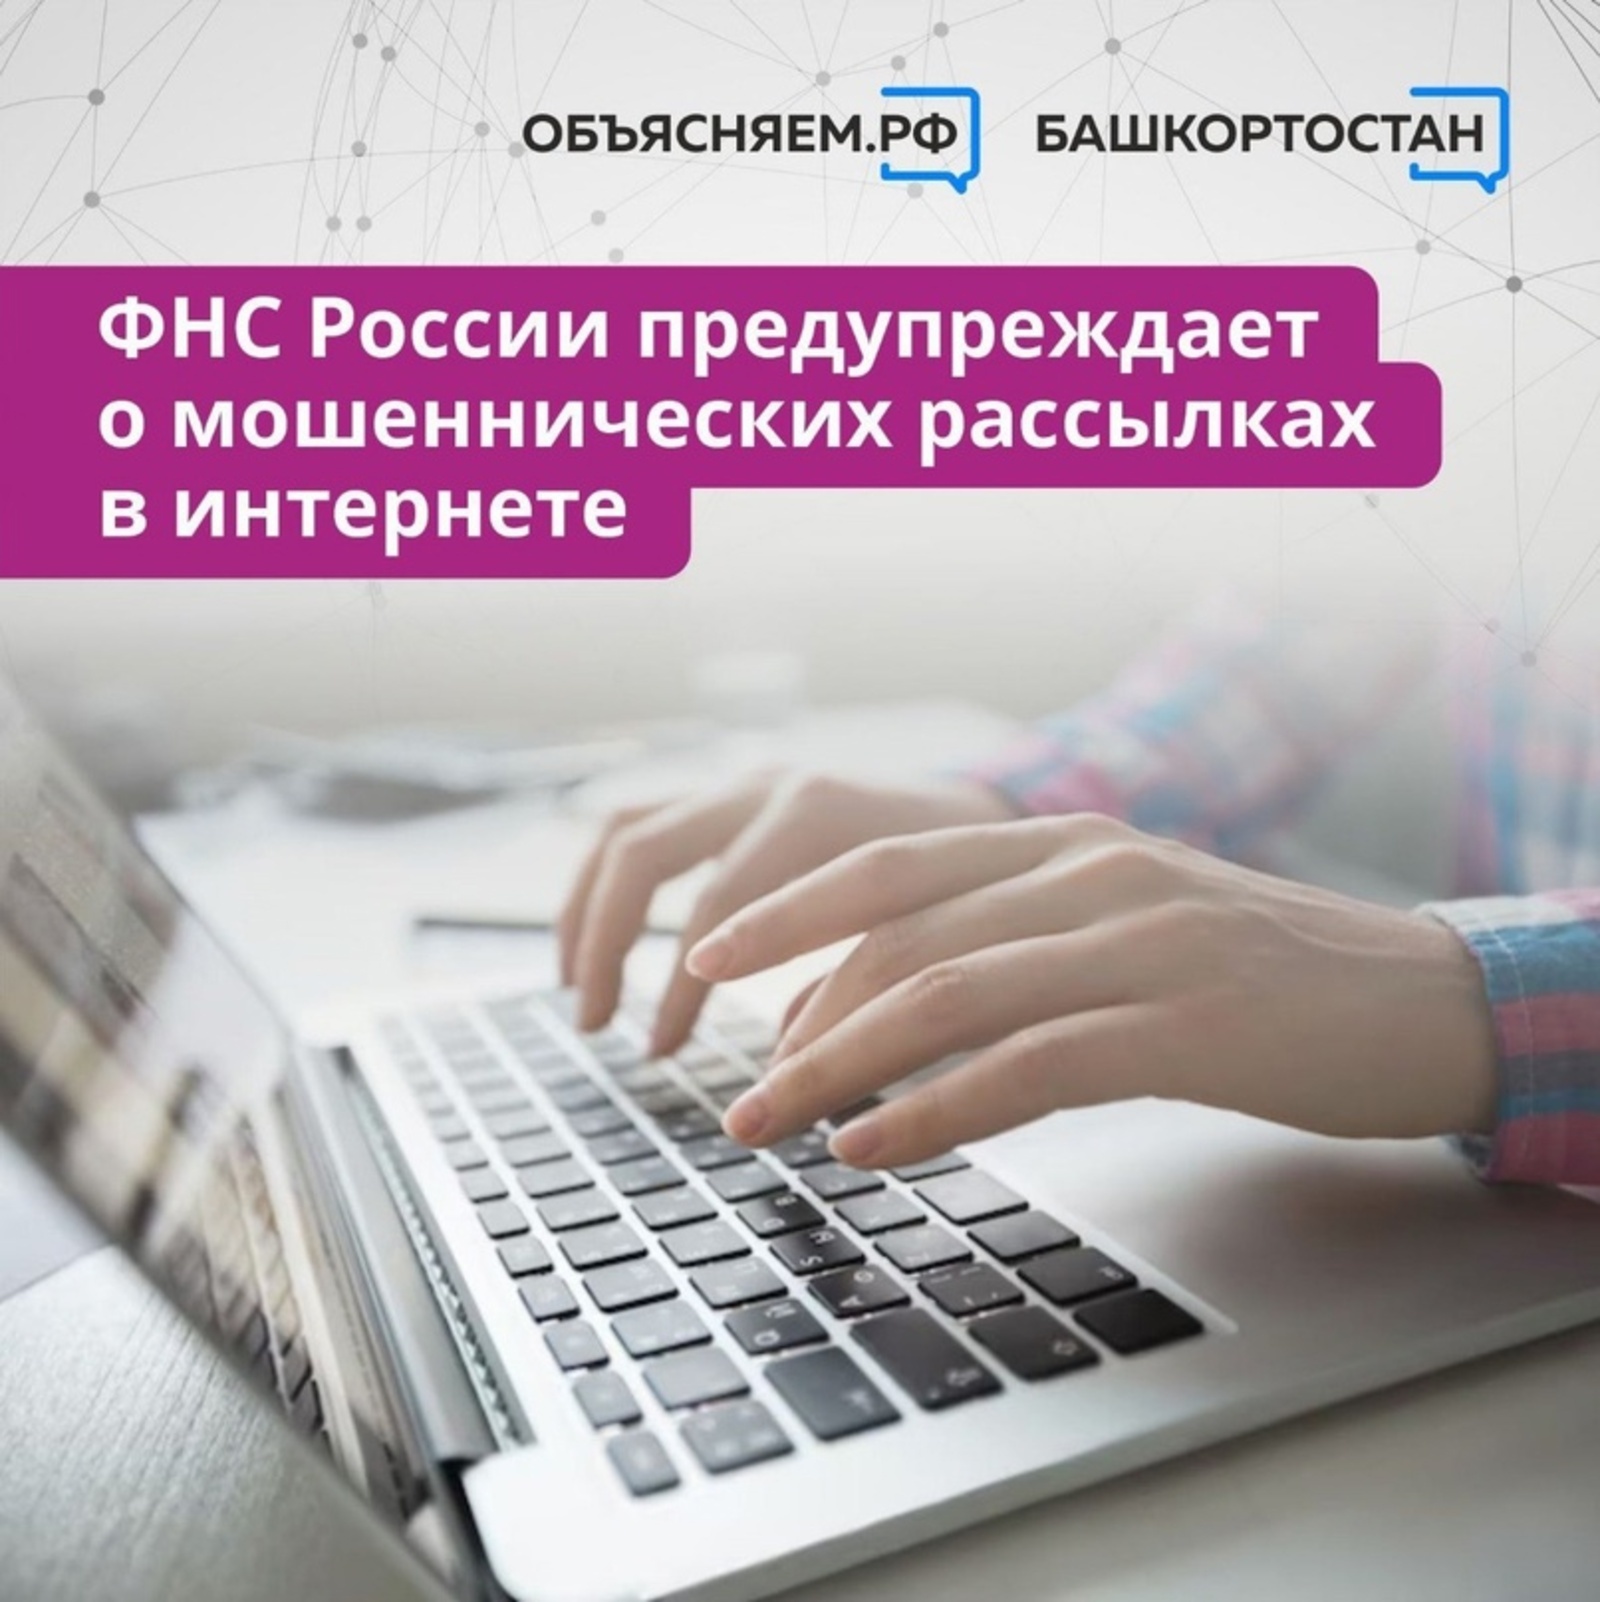 Новая схема от интернет-мошенников - они рассылают от имени ФНС РФ сообщения с требованиями об оплате налоговой задолженности